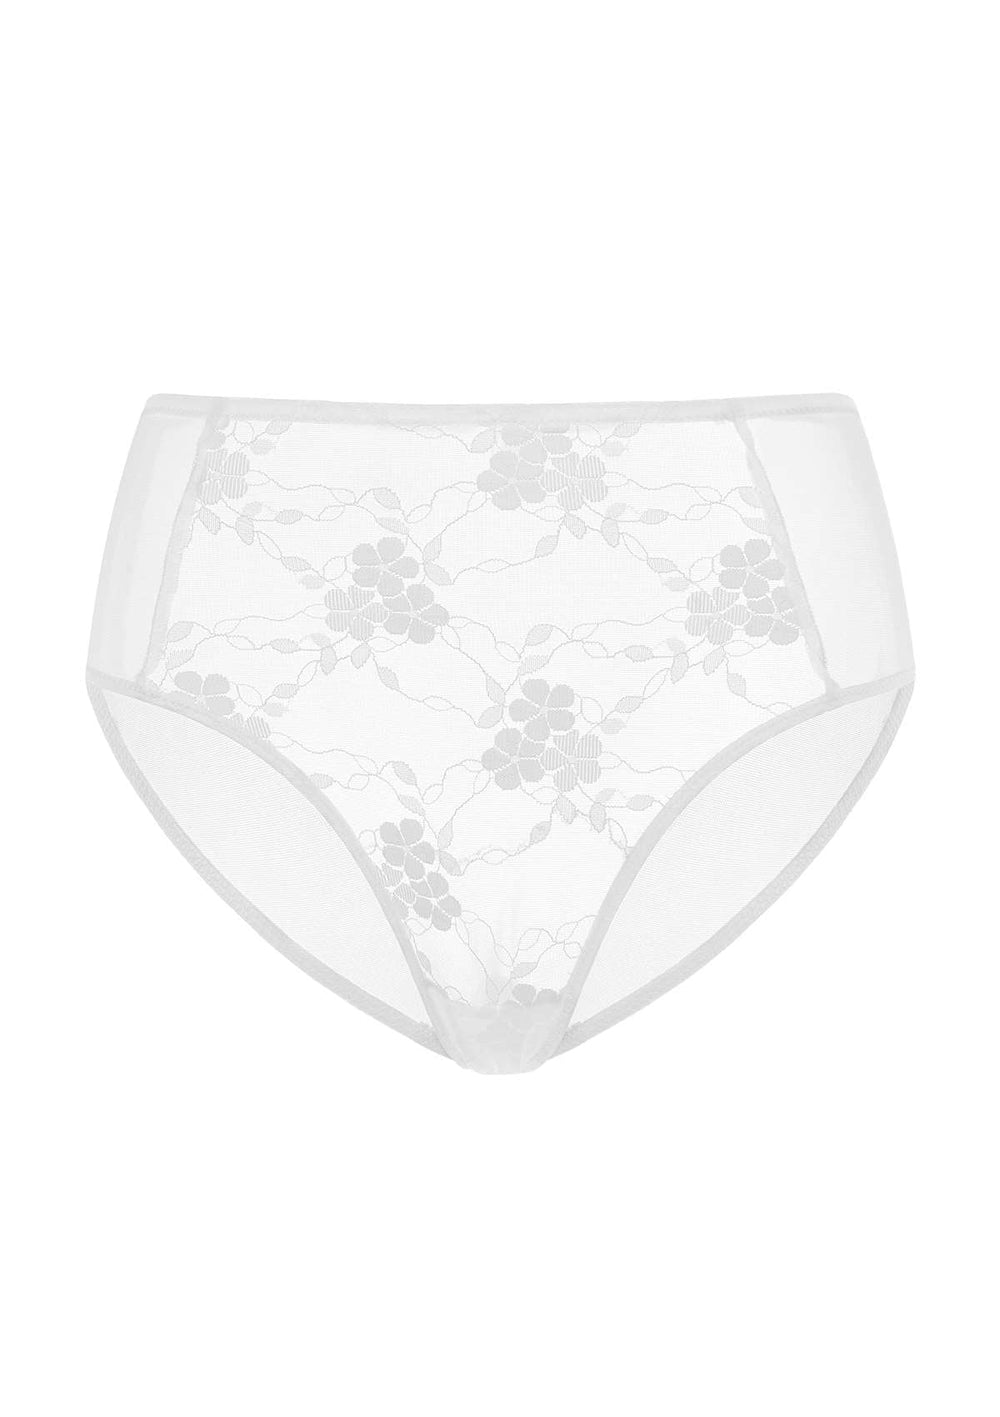 Underwear for Women- Cute Underwear for Women this Spring